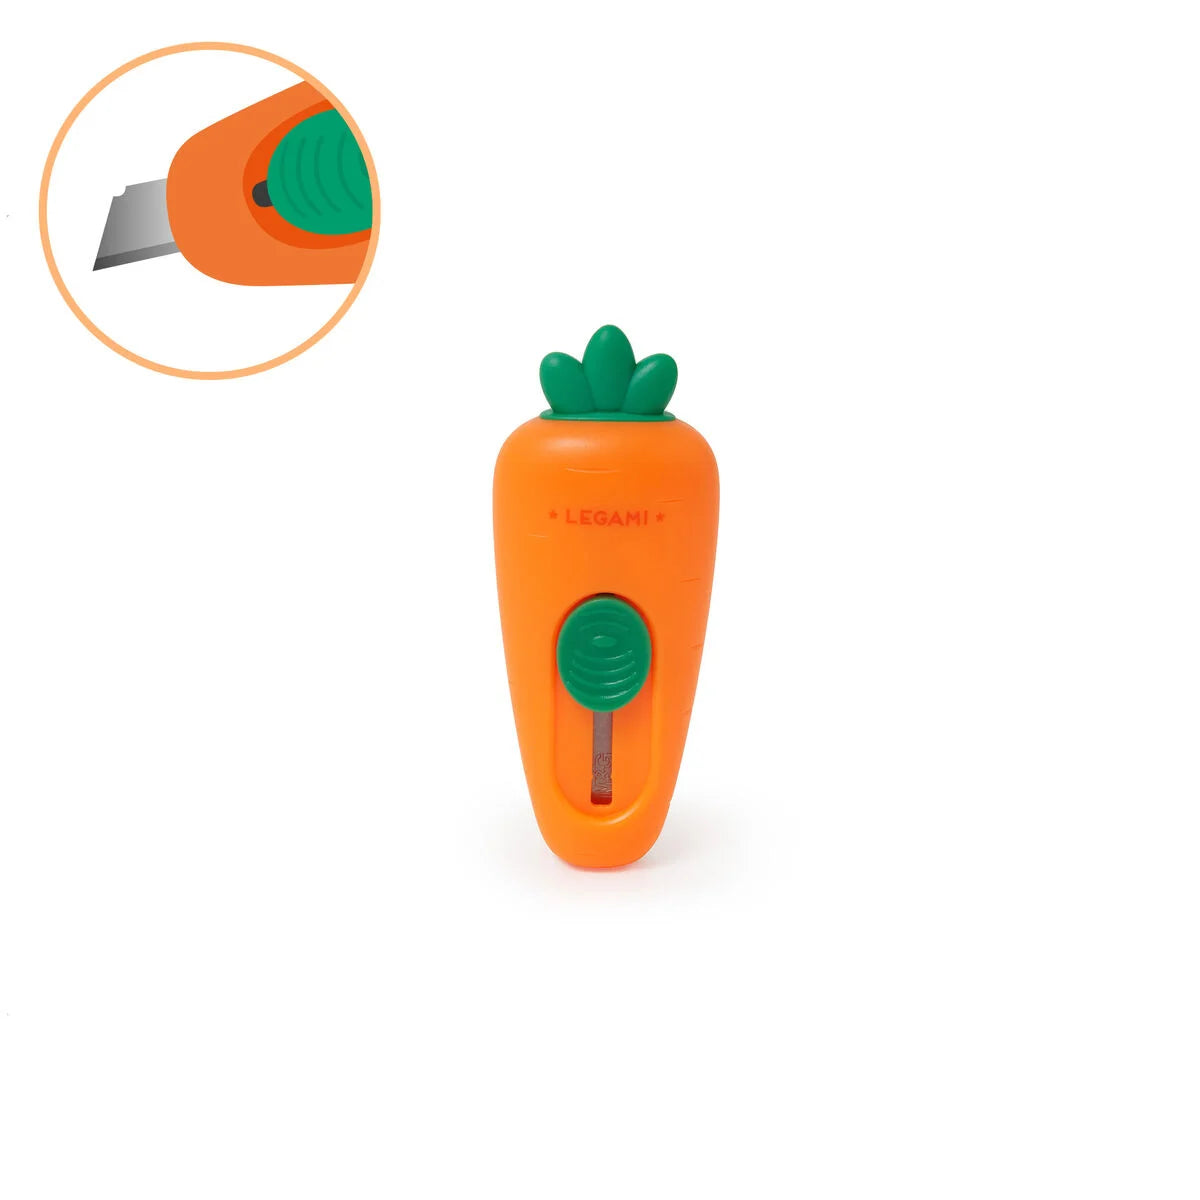 Carrate Cutter - Mini cutter escamotable Legami 